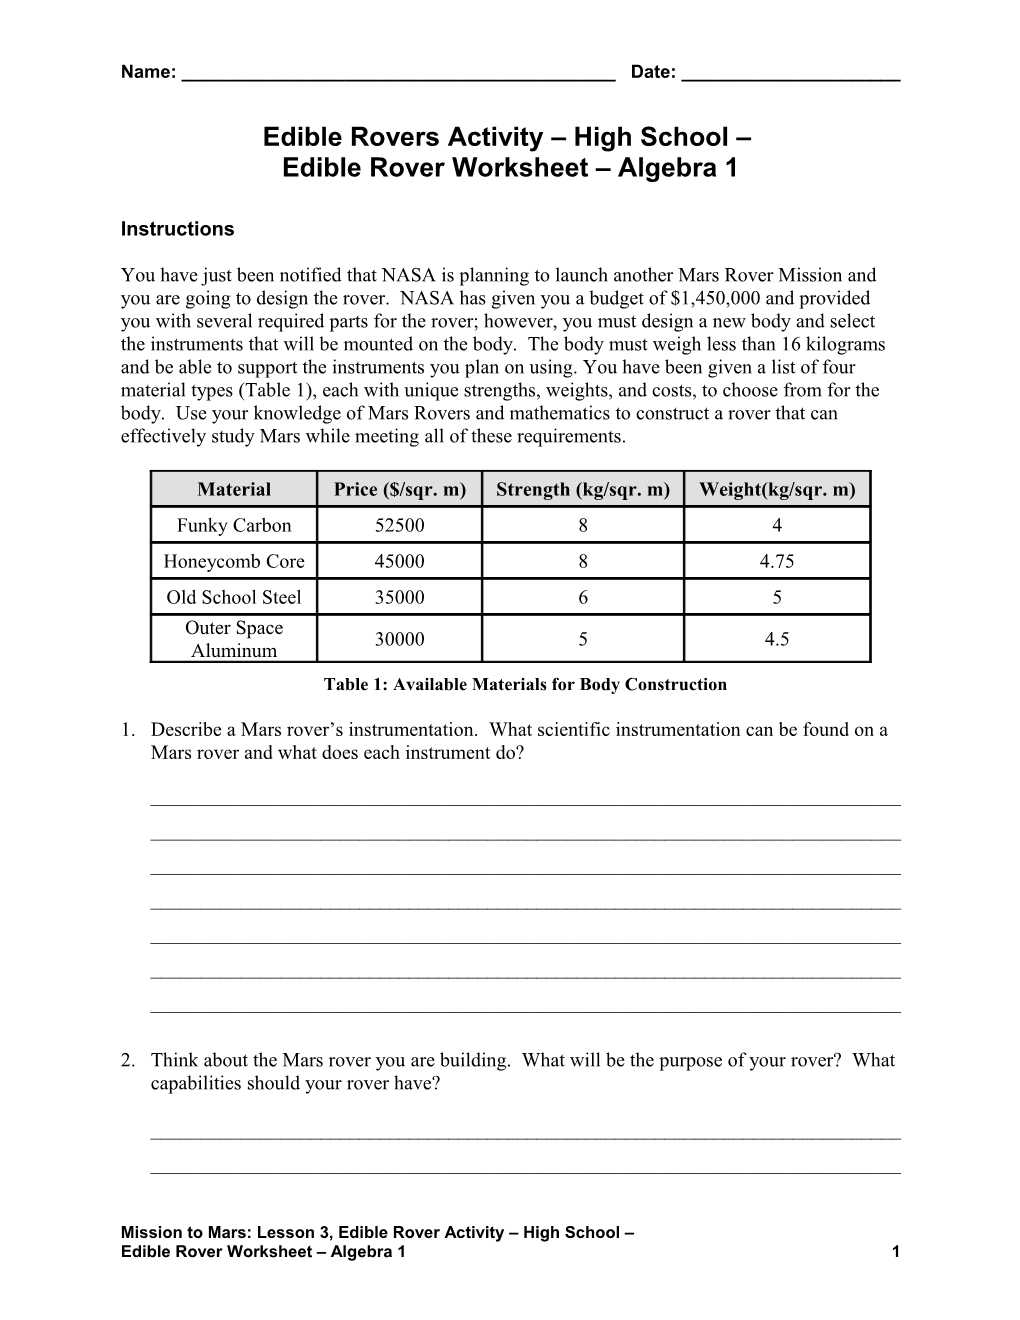 Edible Rover Worksheet Algebra 1